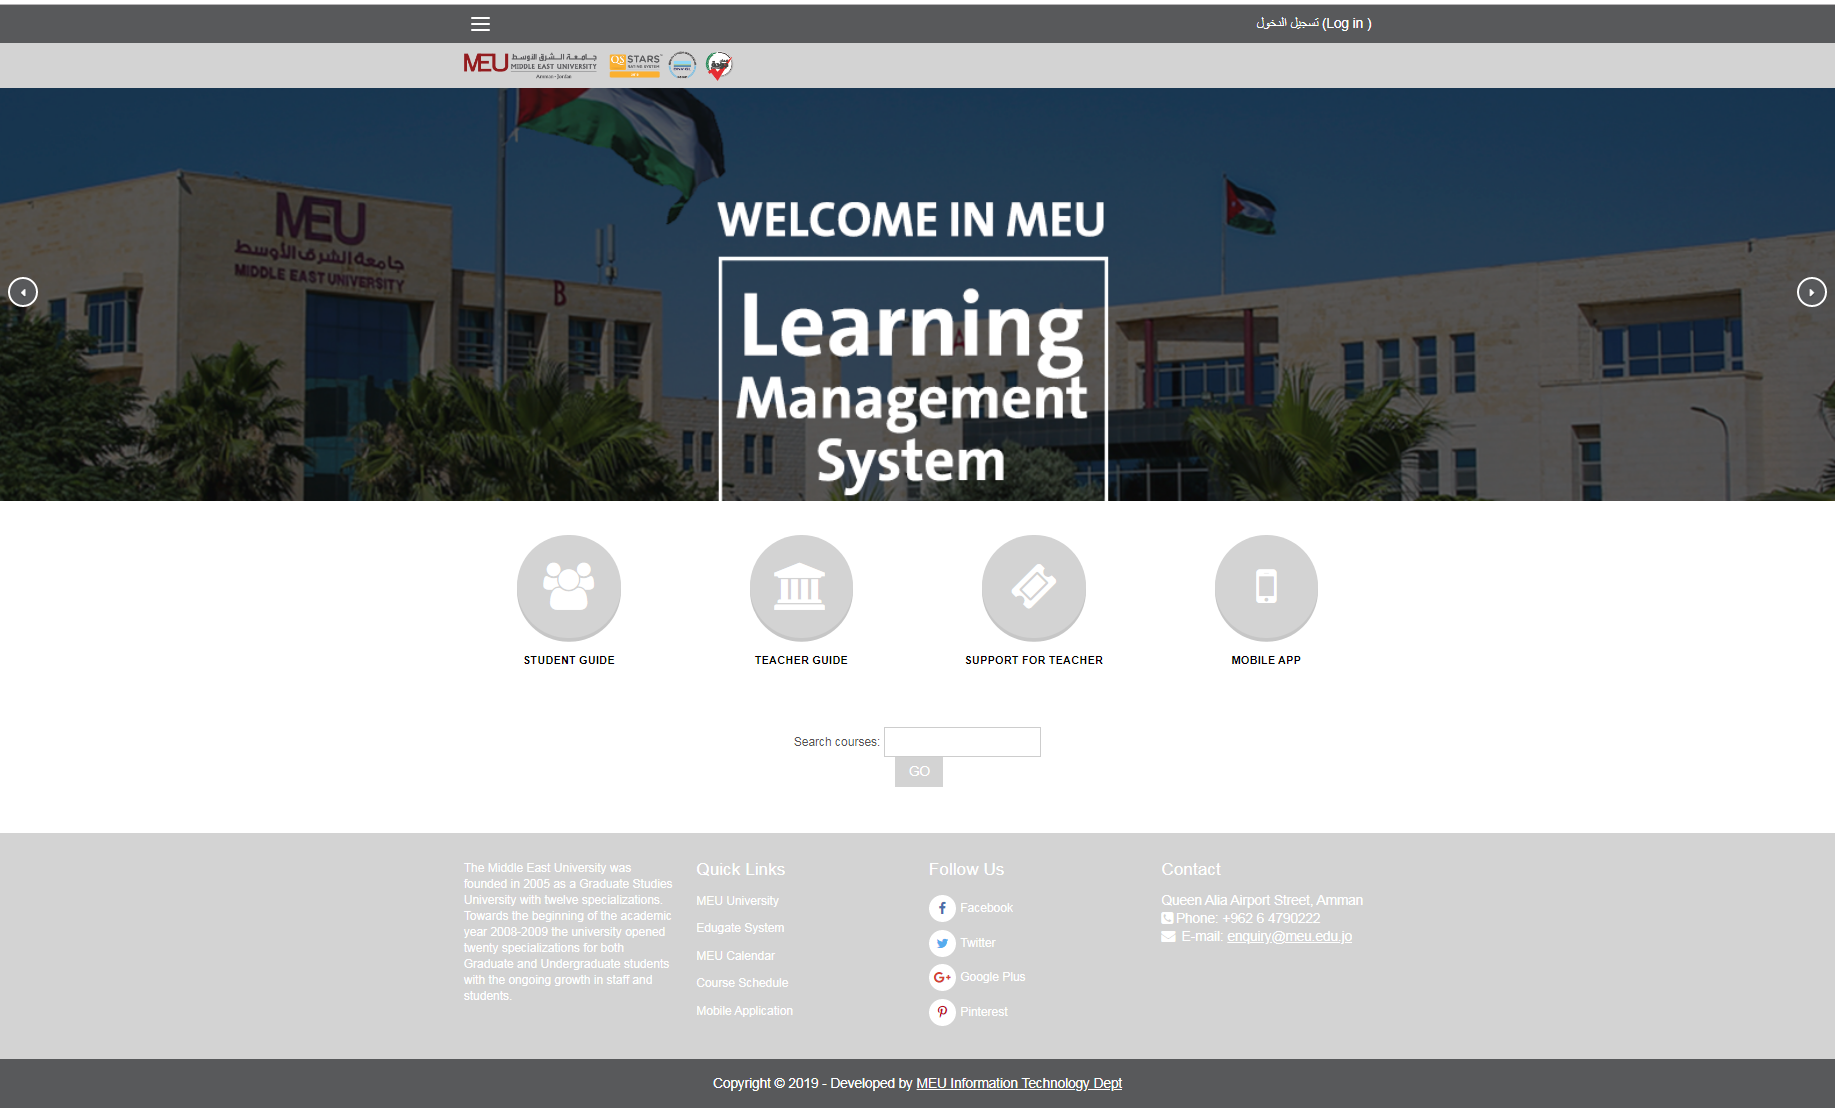 تكنولوجيا معلومات "الشرق الأوسط" تطلق واجهة تعليم الكترونيا جديدة ..  صورة